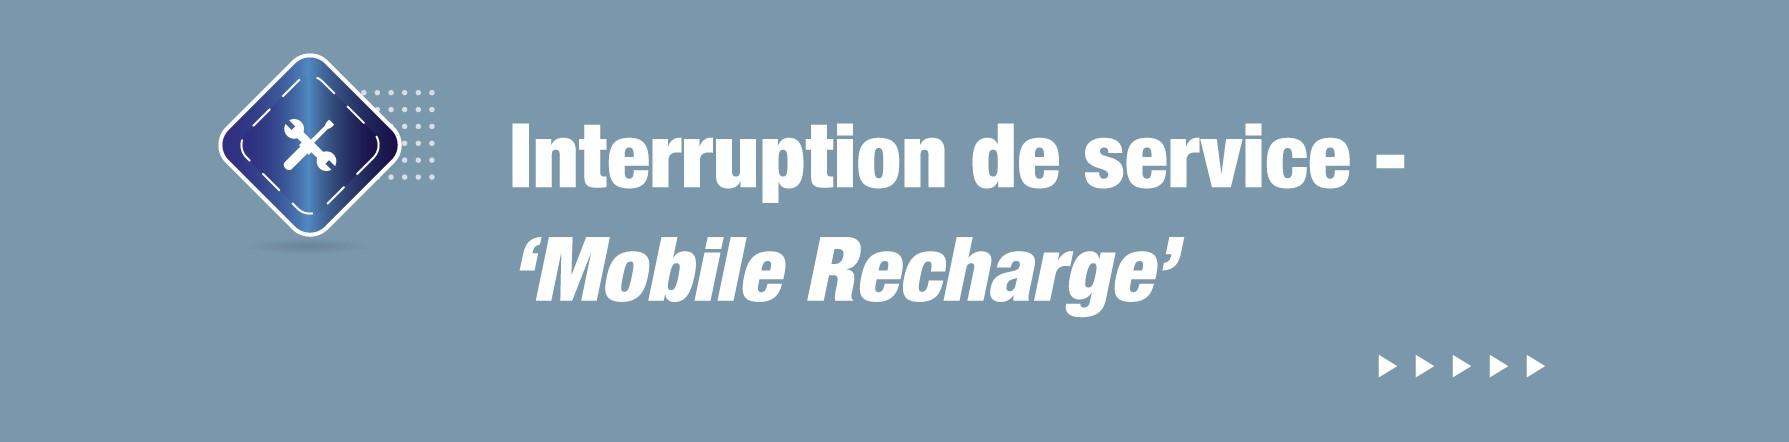 COMMUNIQUE – Interruption de service - ‘Mobile Recharge’